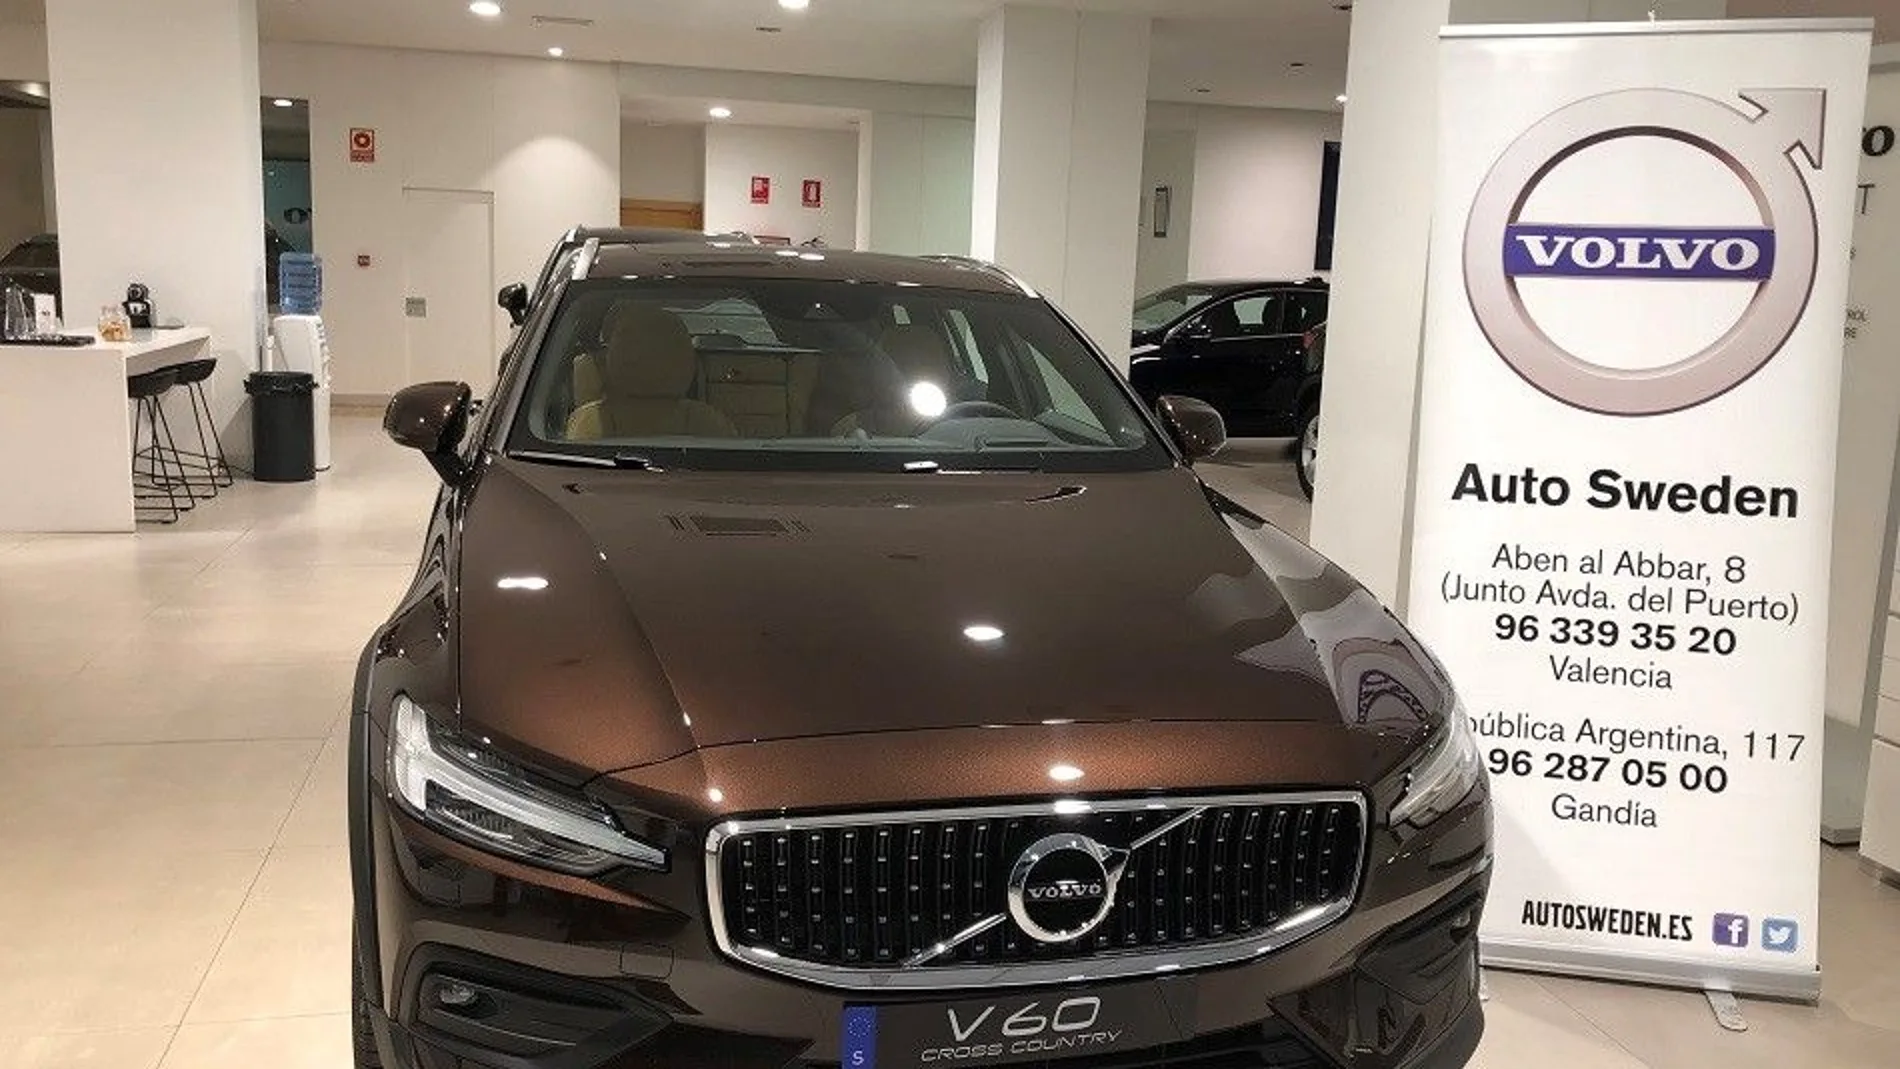 El nuevo V60 de Volvo ya está en los concesionarios de Auto Sweden